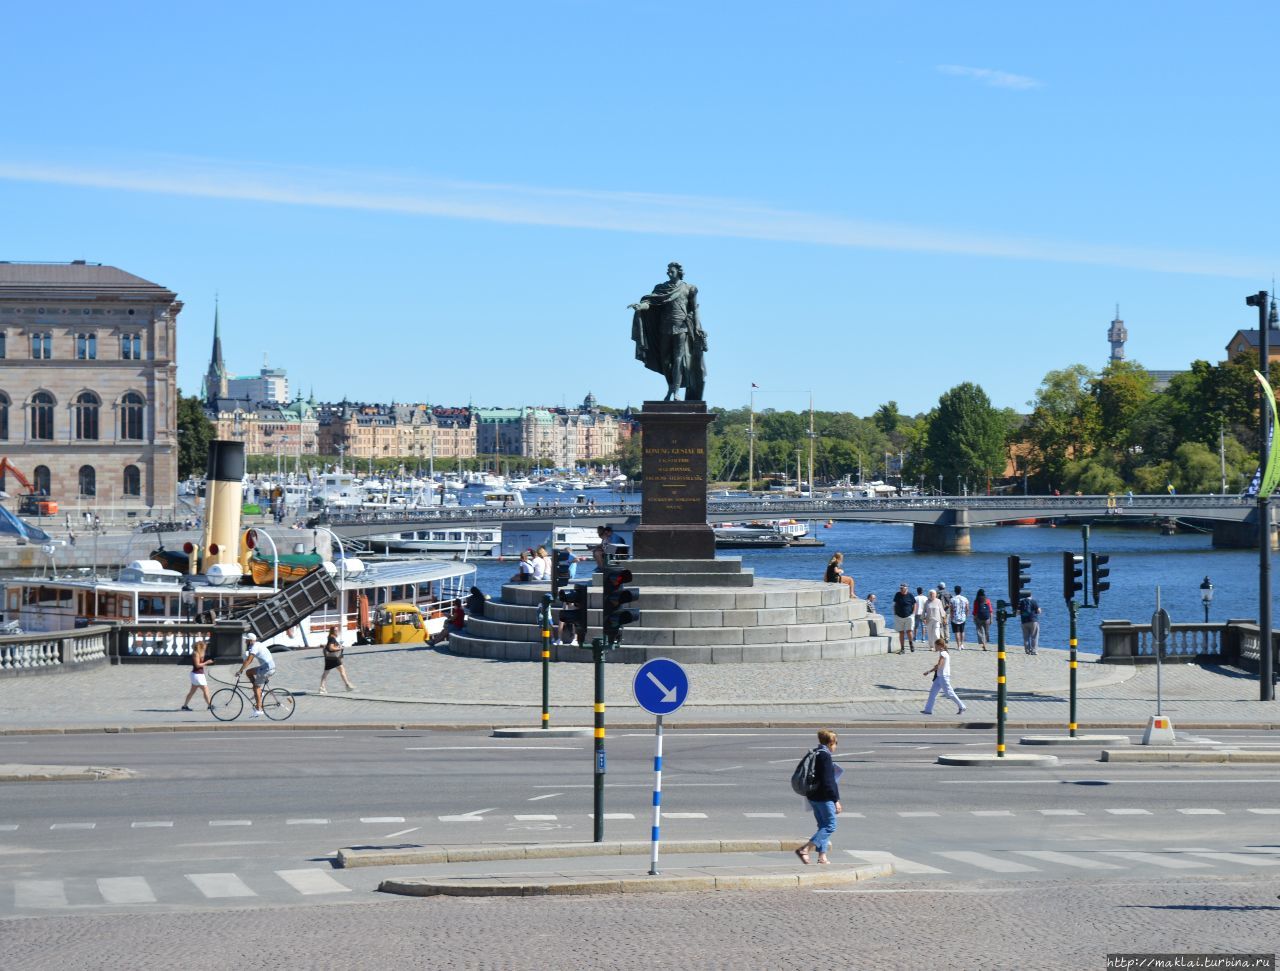 Памятник королю Густаву III Стокгольм, Швеция